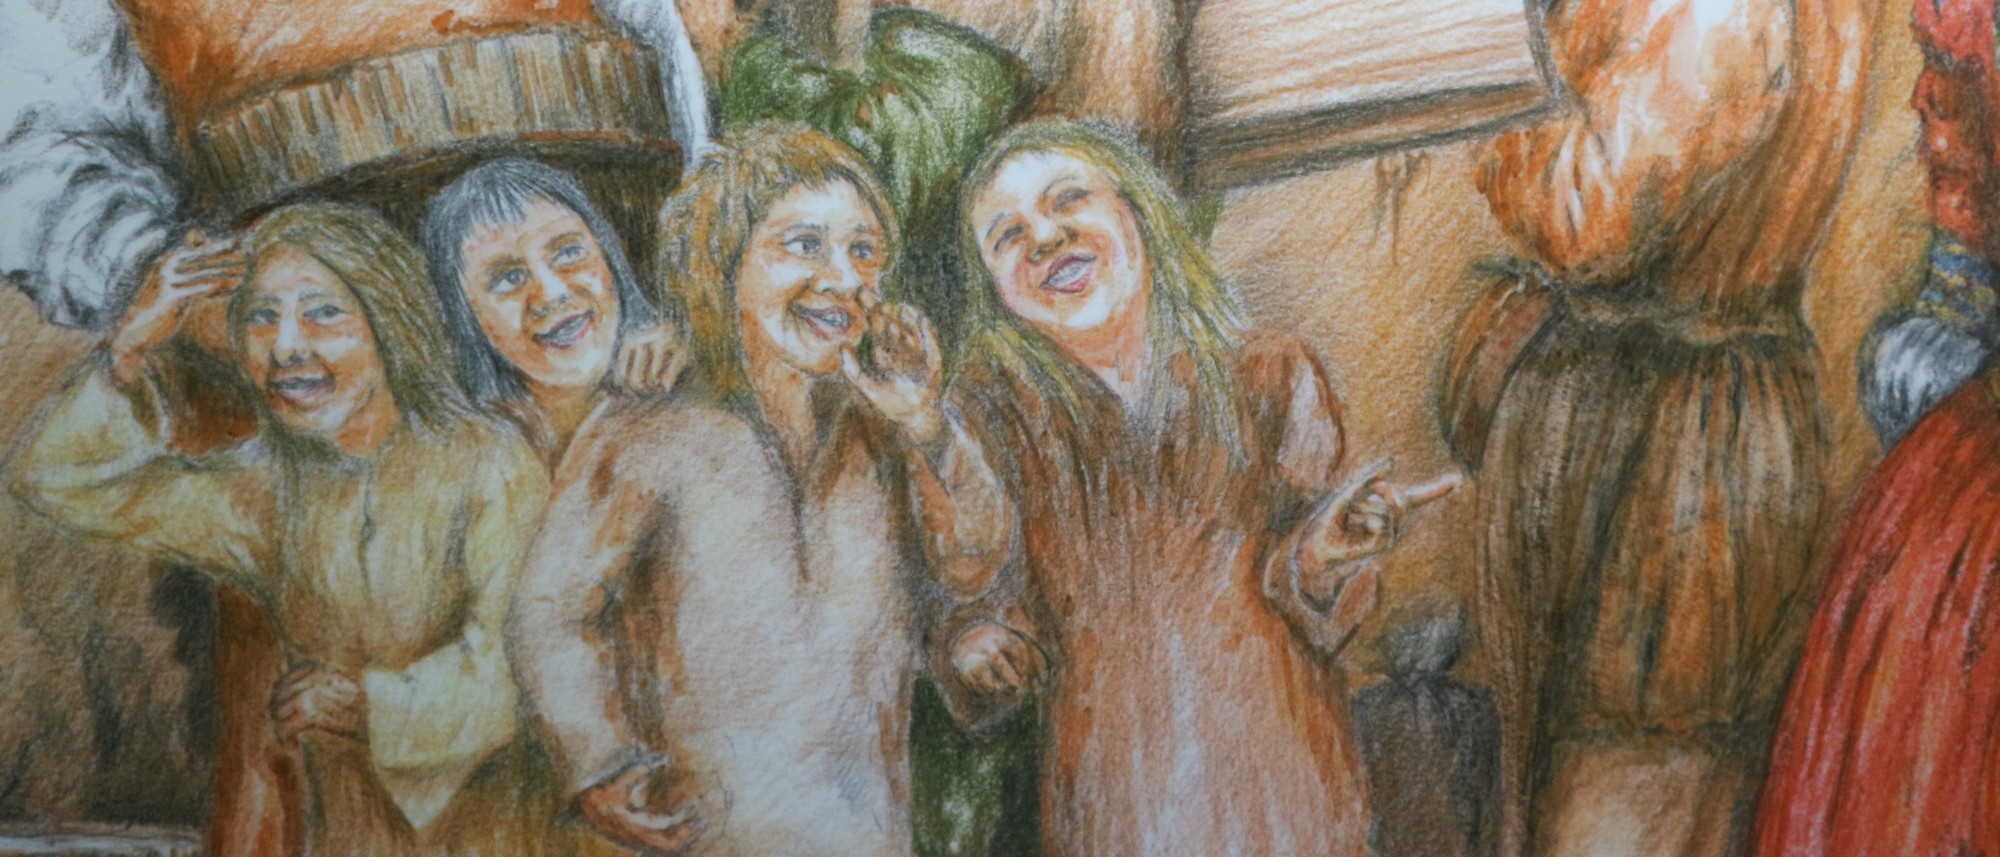 Die Zeichnung zeigt ein Lebensbild aus der kulturgeschichtlichen Dauerausstellung mit lachenden Kindern in mittelalterlicher Kleidung.